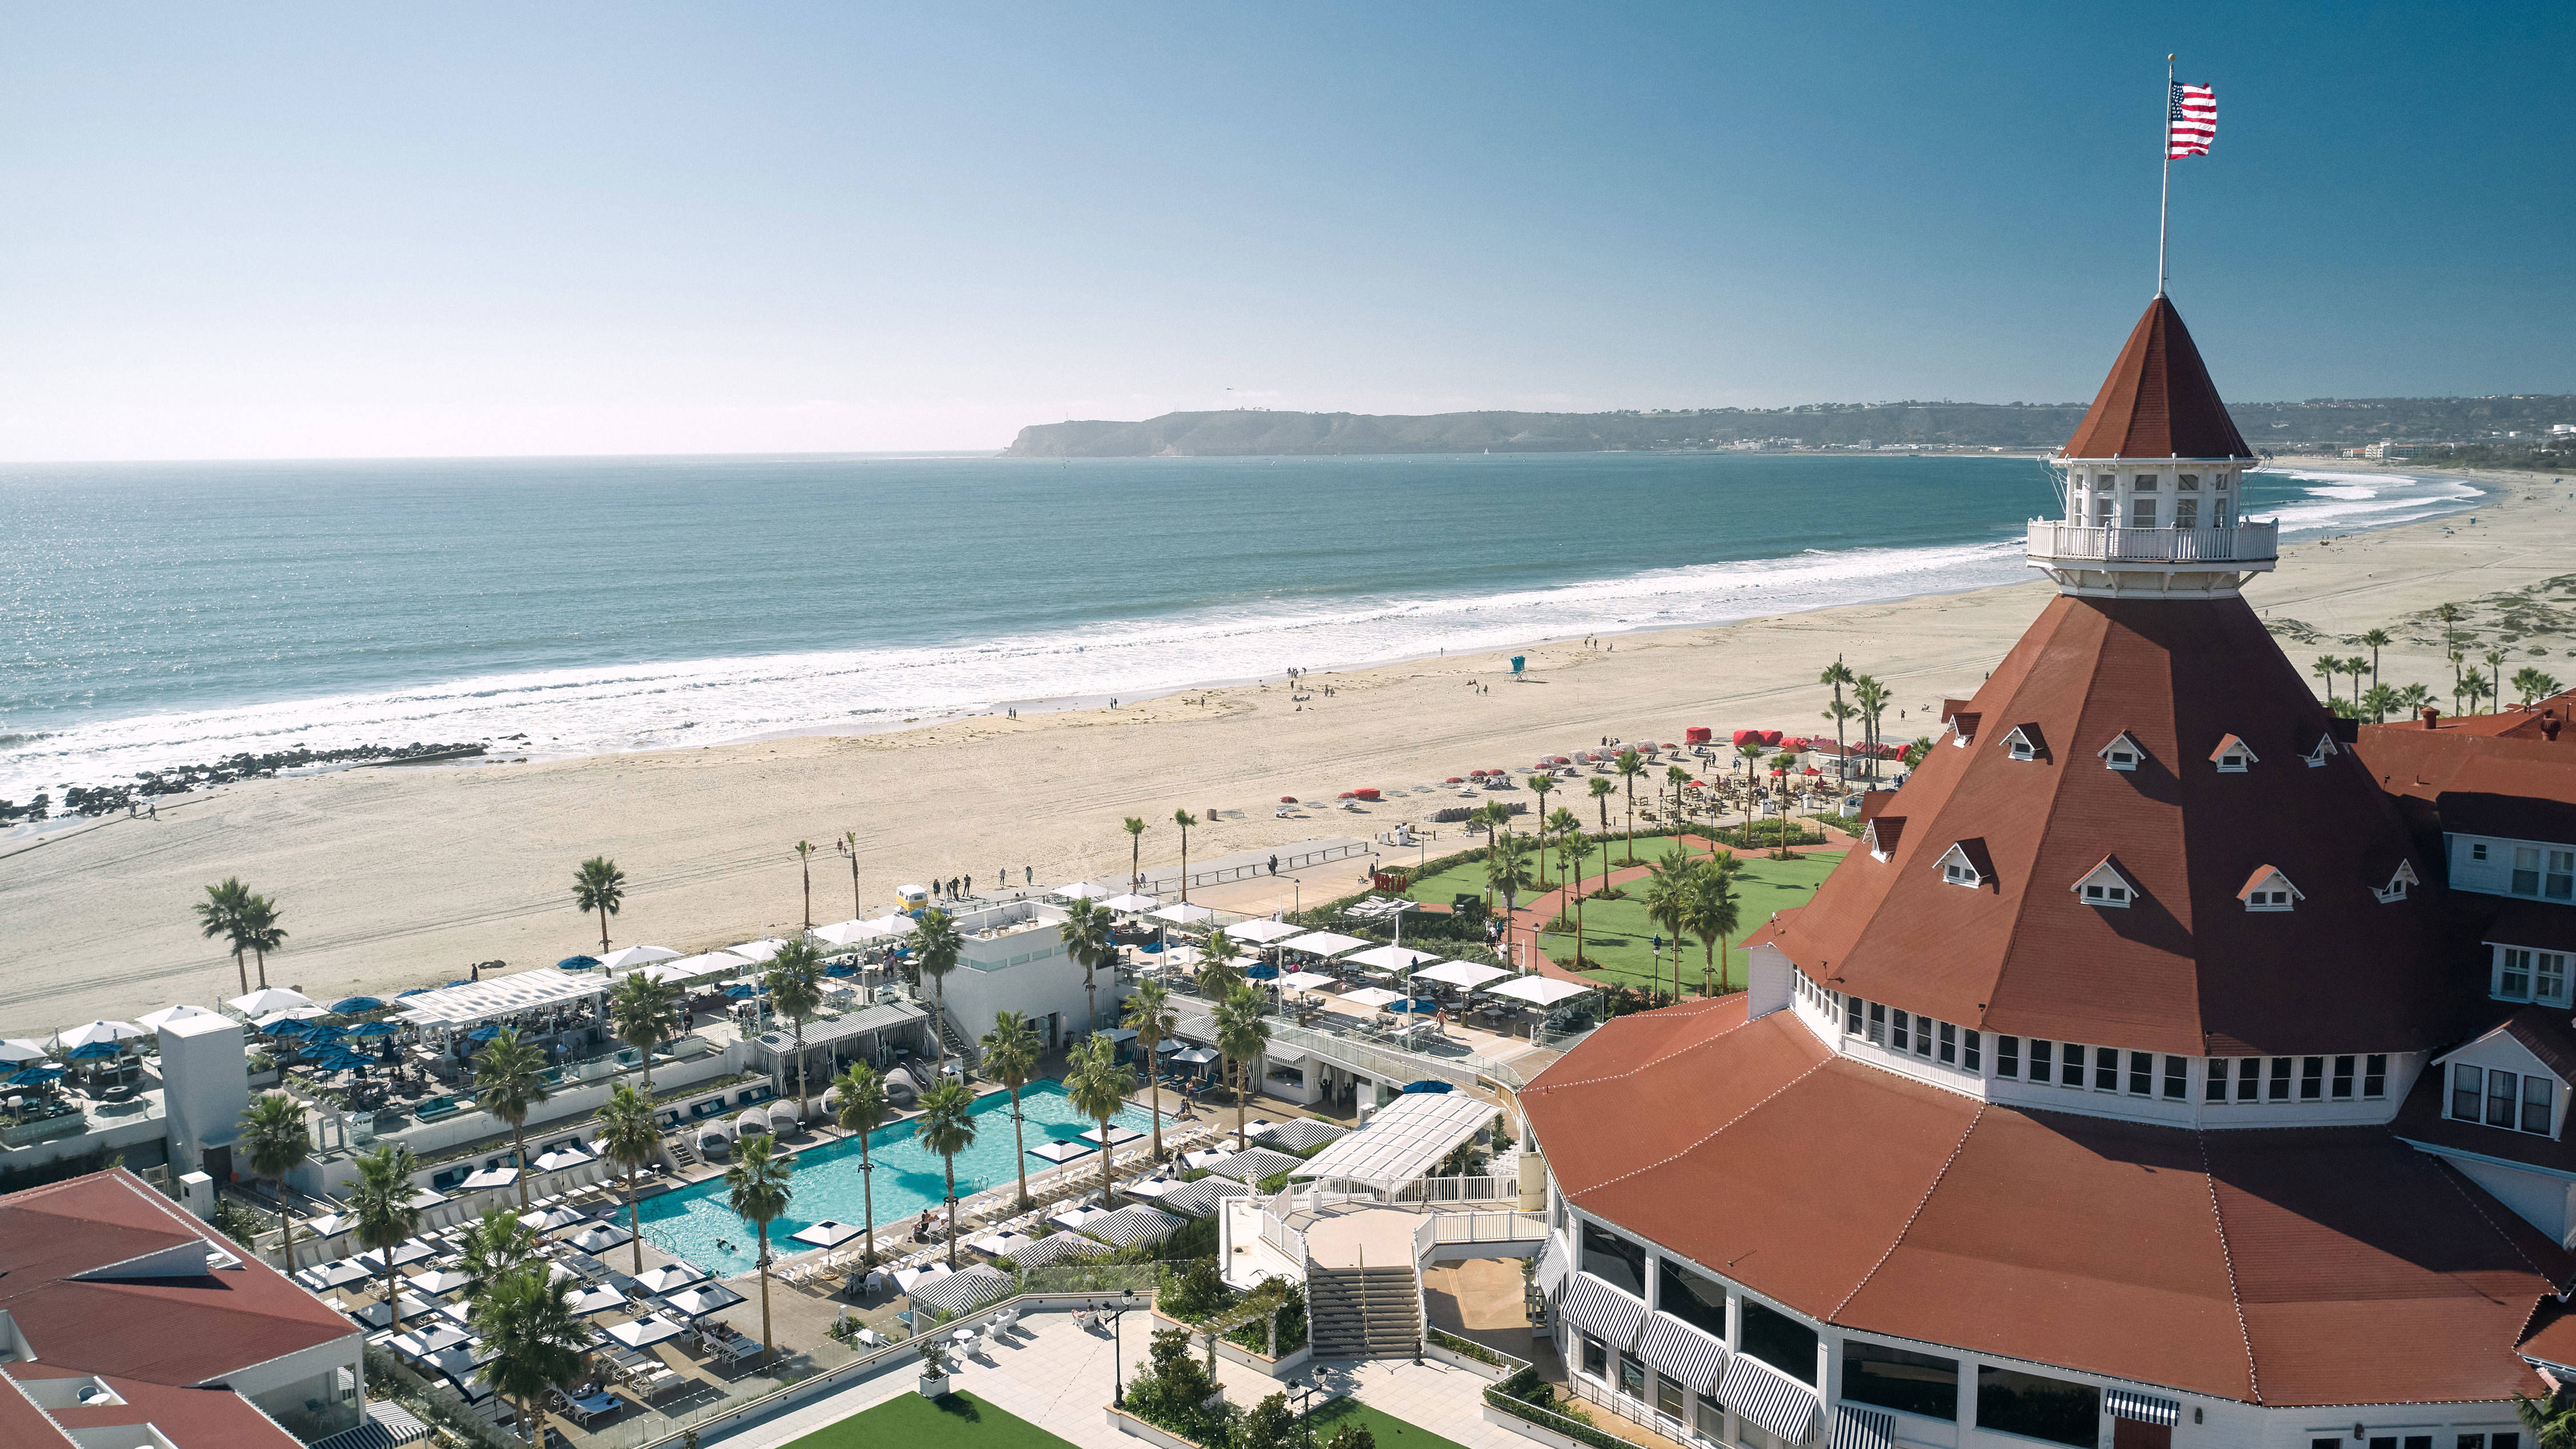 Fachada del hotel con área de piscina junto a la playa